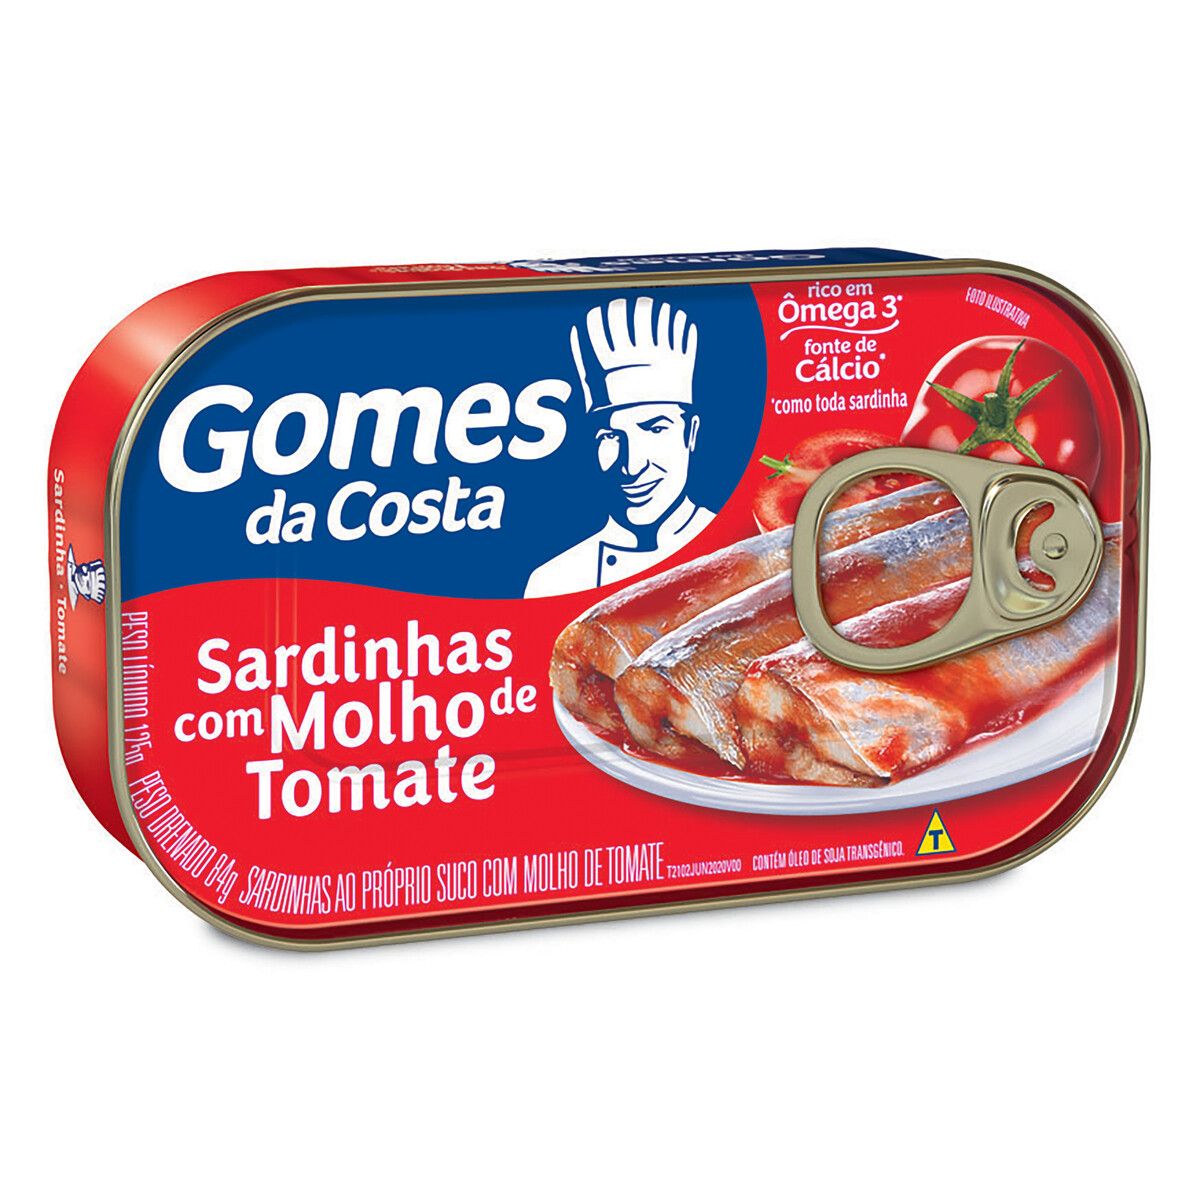 Sardinha Gomes da Costa com Molho de Tomate Lata 125g image number 0